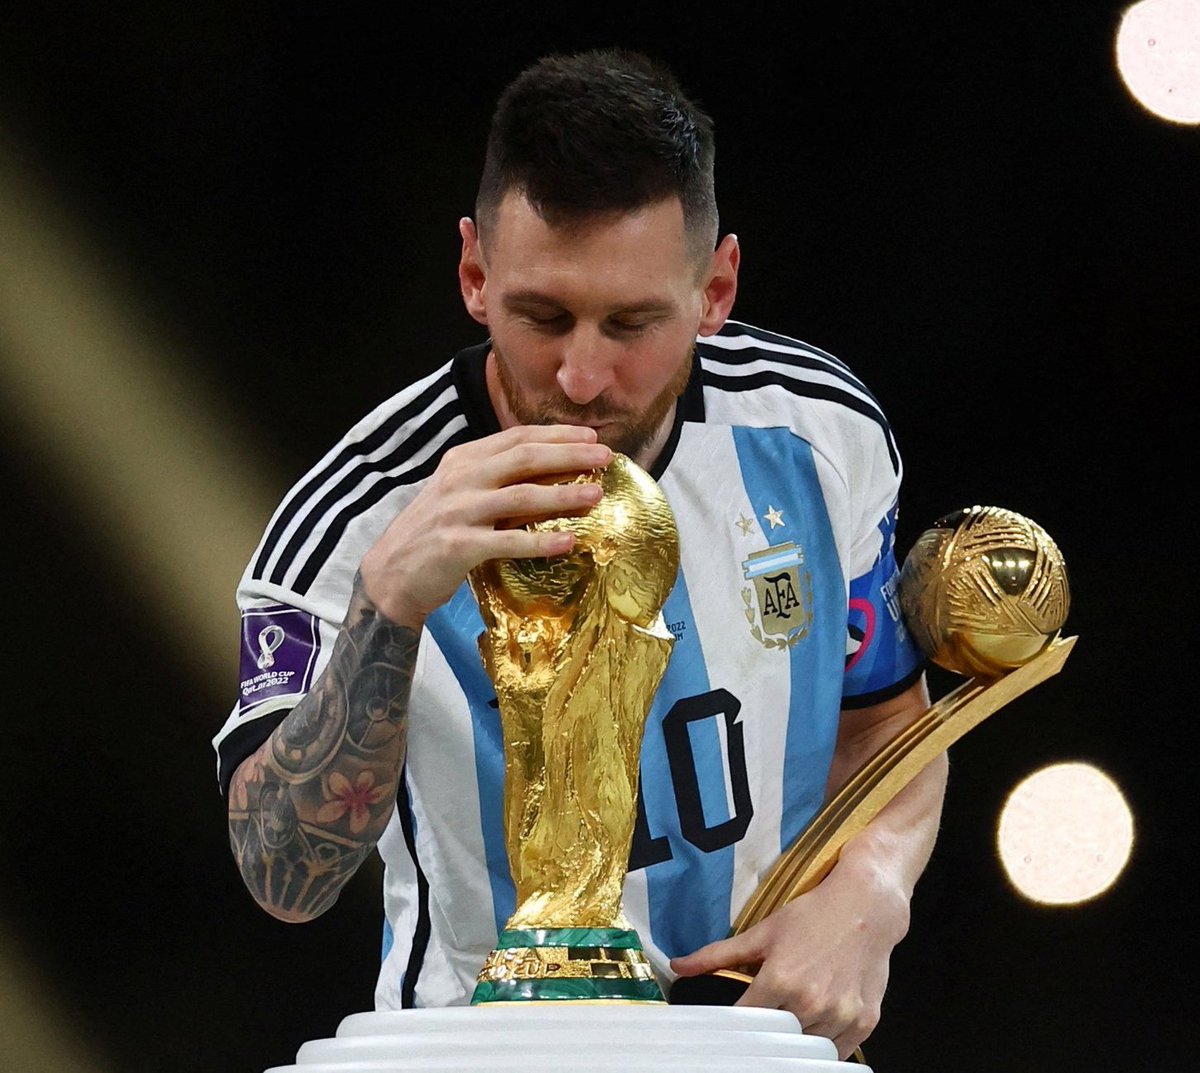 Nada como Leo y la Copa para arrancar 2023!
Vamos carajo!
#SeleccionArgentina #Argentina #Mundial2022 #MundialQatar2022 #Qatar2022 #Messi #ArgentinaCampeonDelMundo